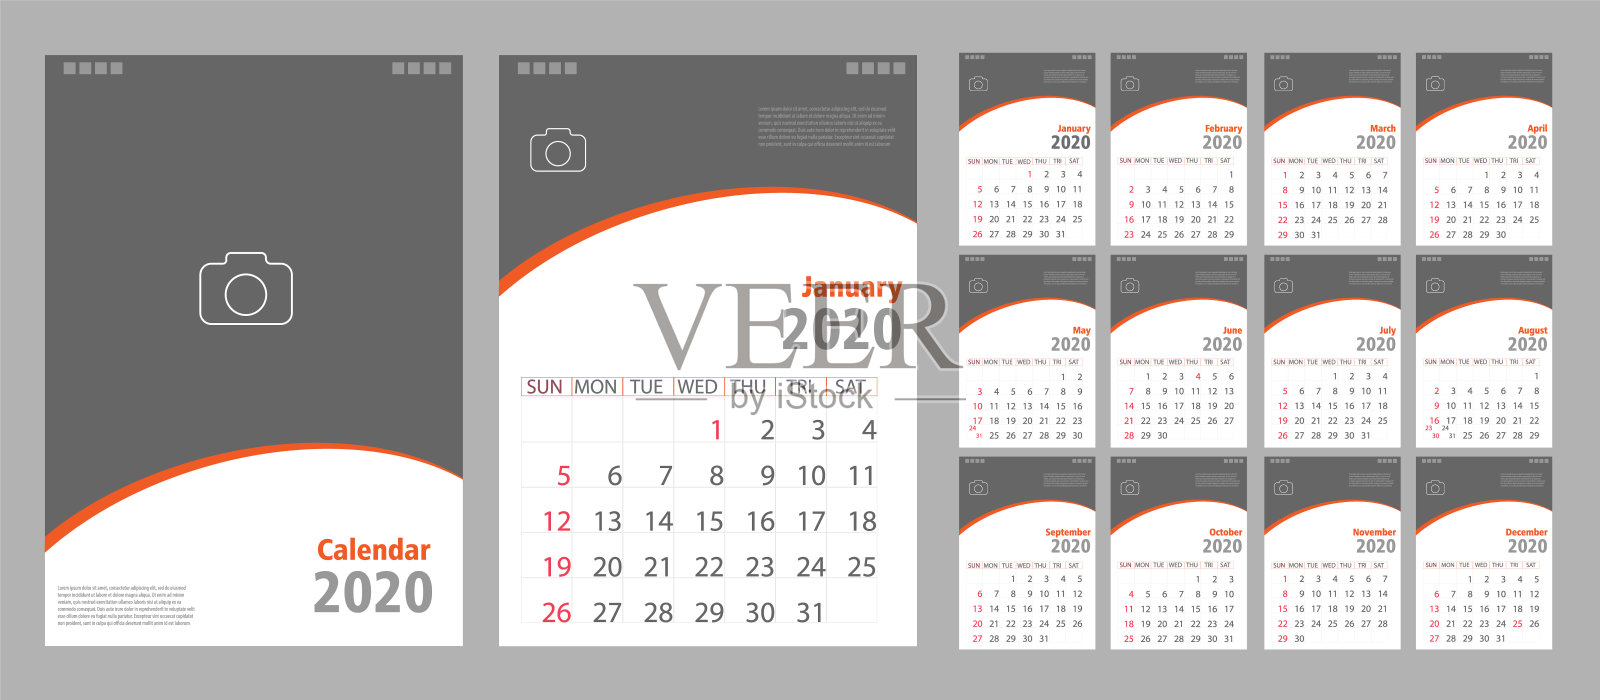 日历2020，设置桌面日历模板设计与地方的照片和公司标志。一周从周日开始。一套12个月设计模板素材